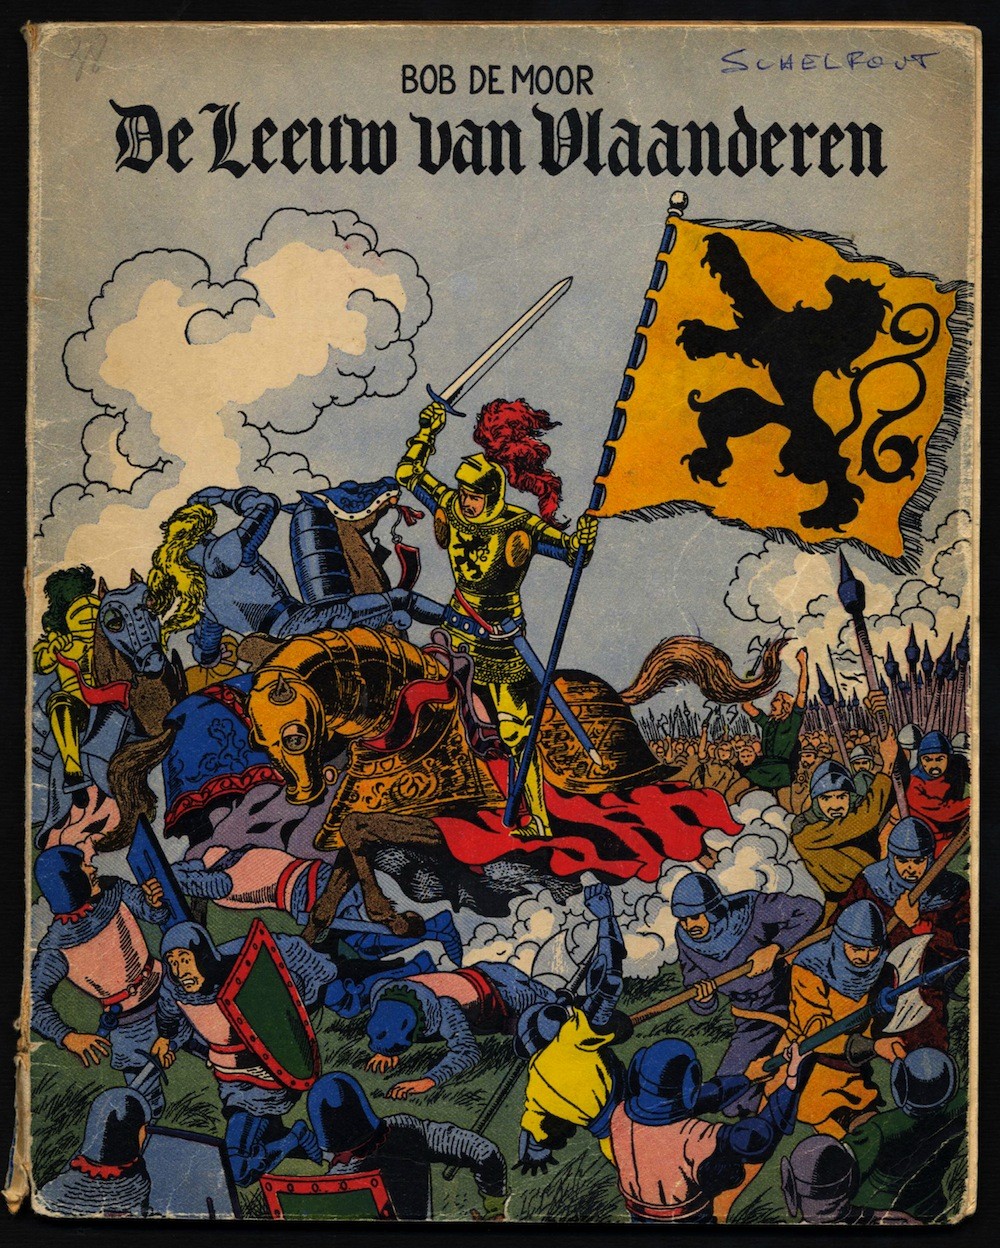 'De Leeuw van Vlaanderen' in a reworked version by Johan De Moor